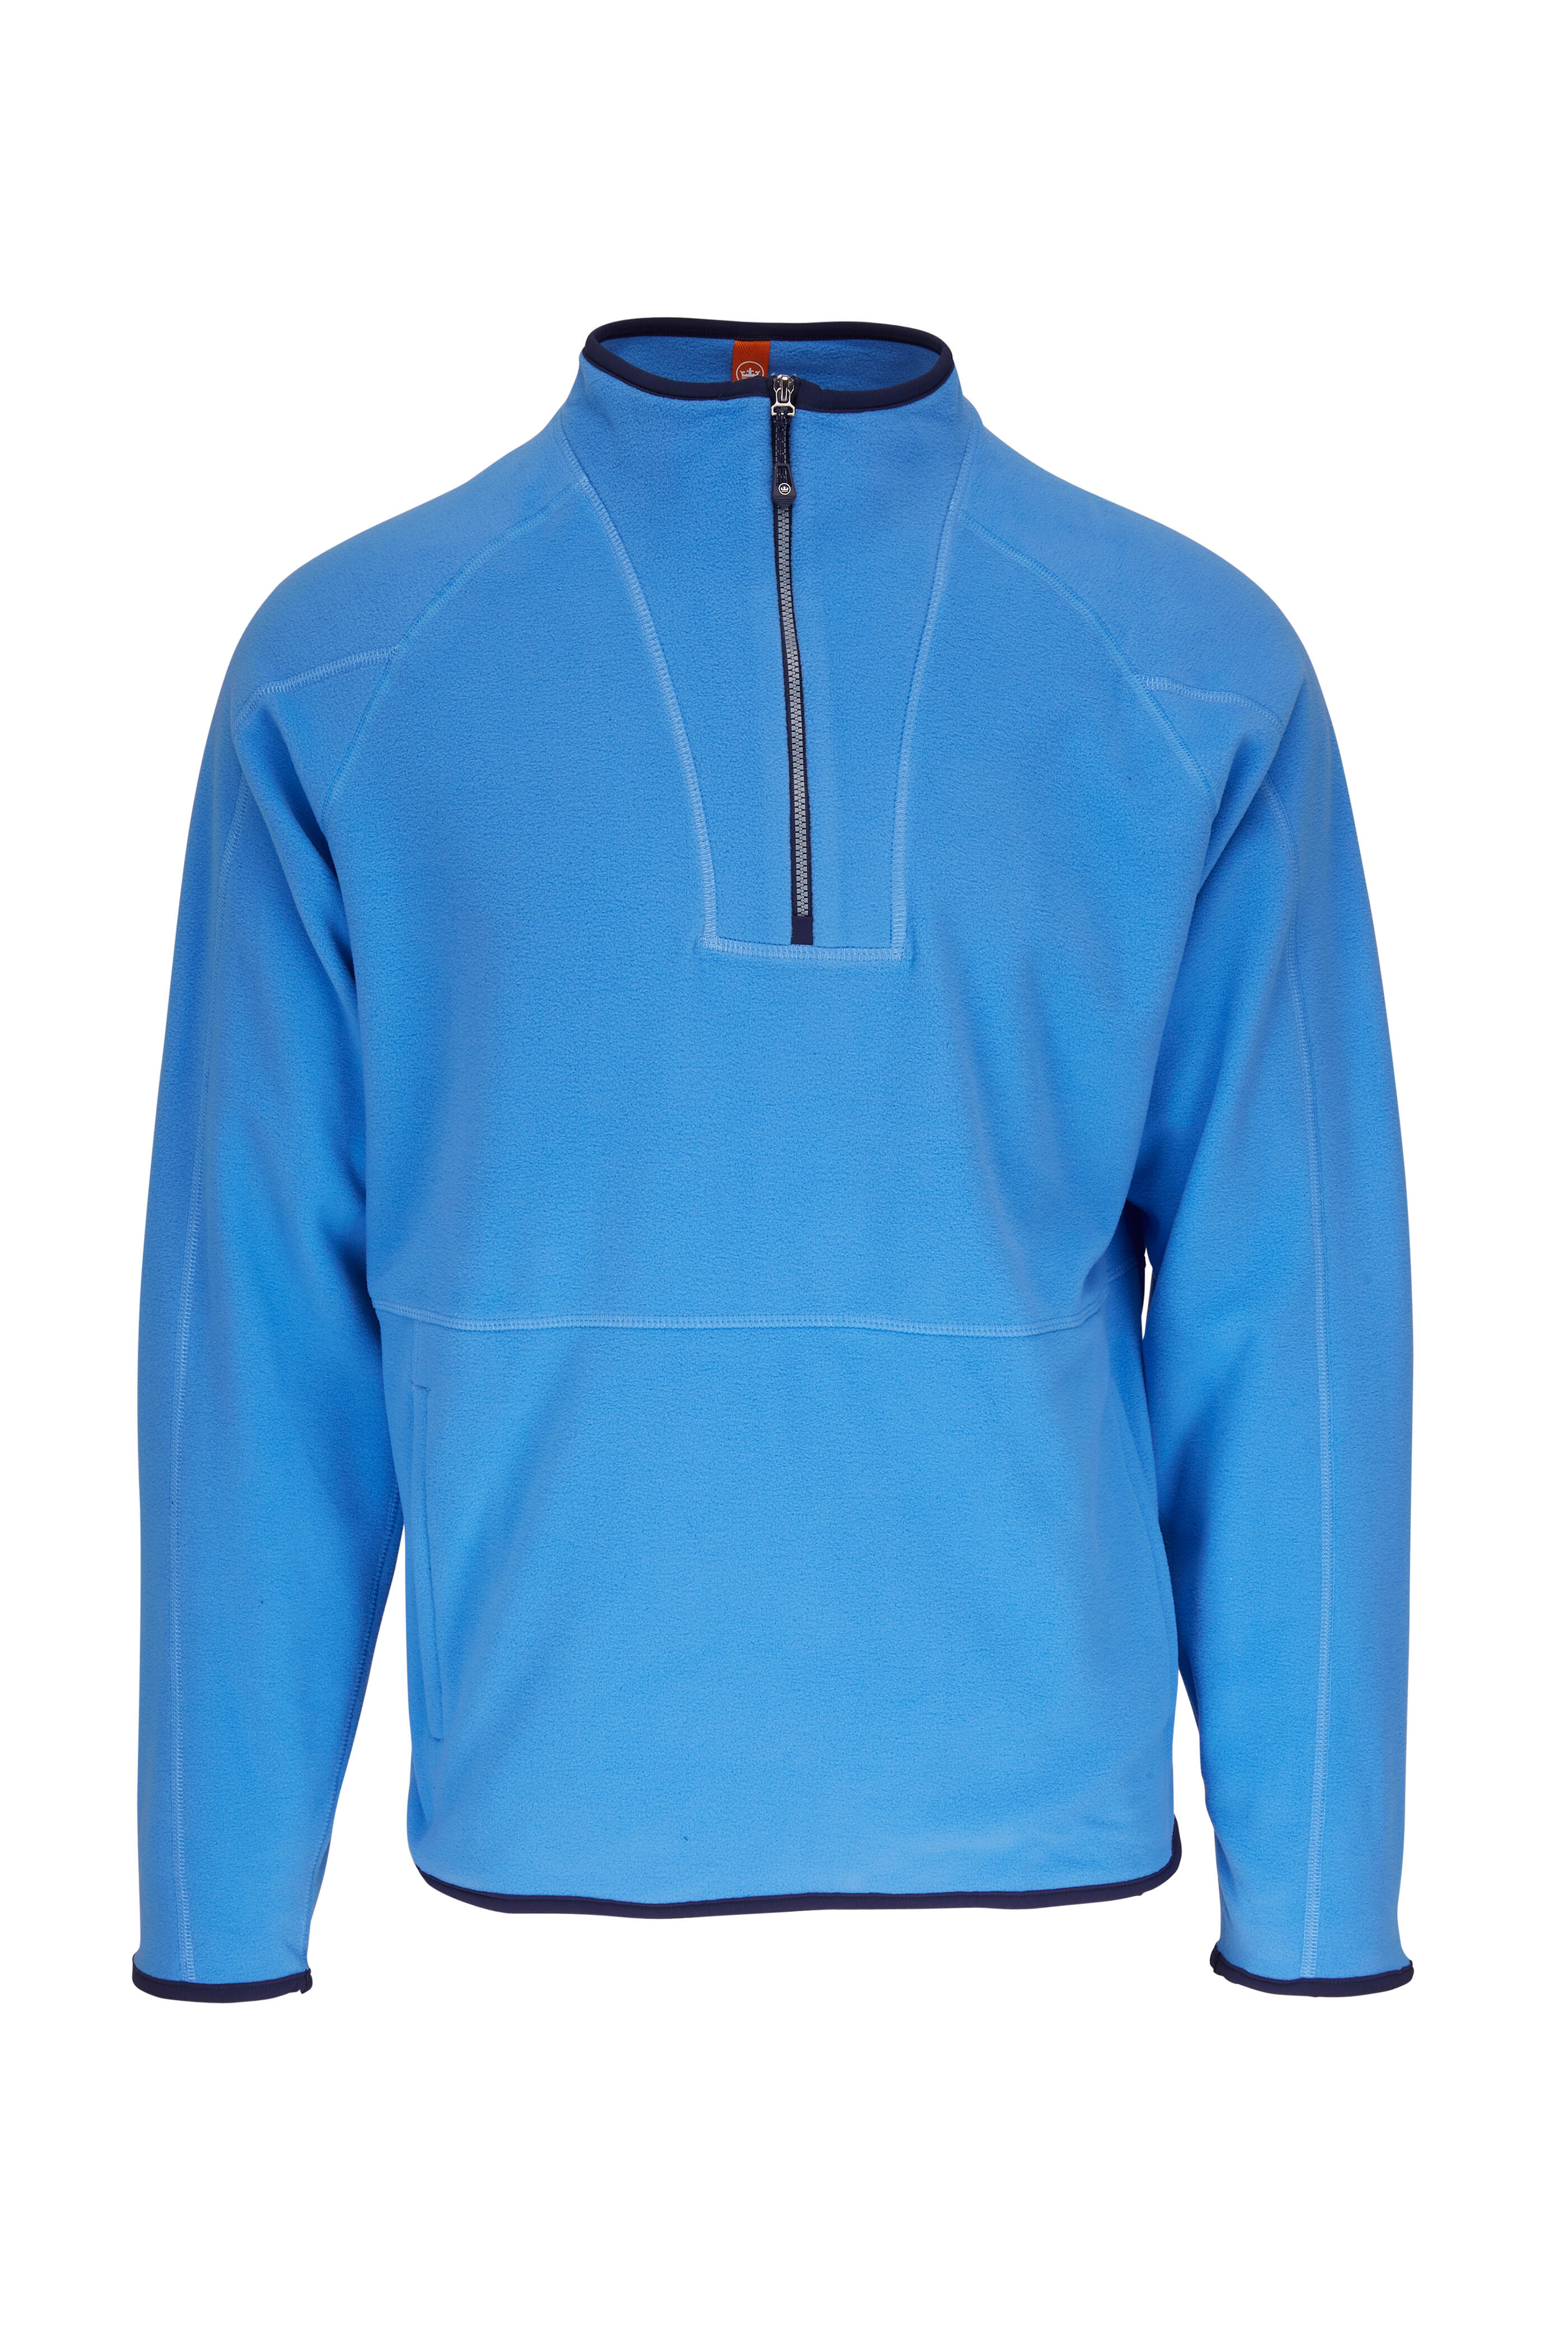 Spyder, Men's Activewear ¼ Zip Pullover Sweater Shirt (Choose